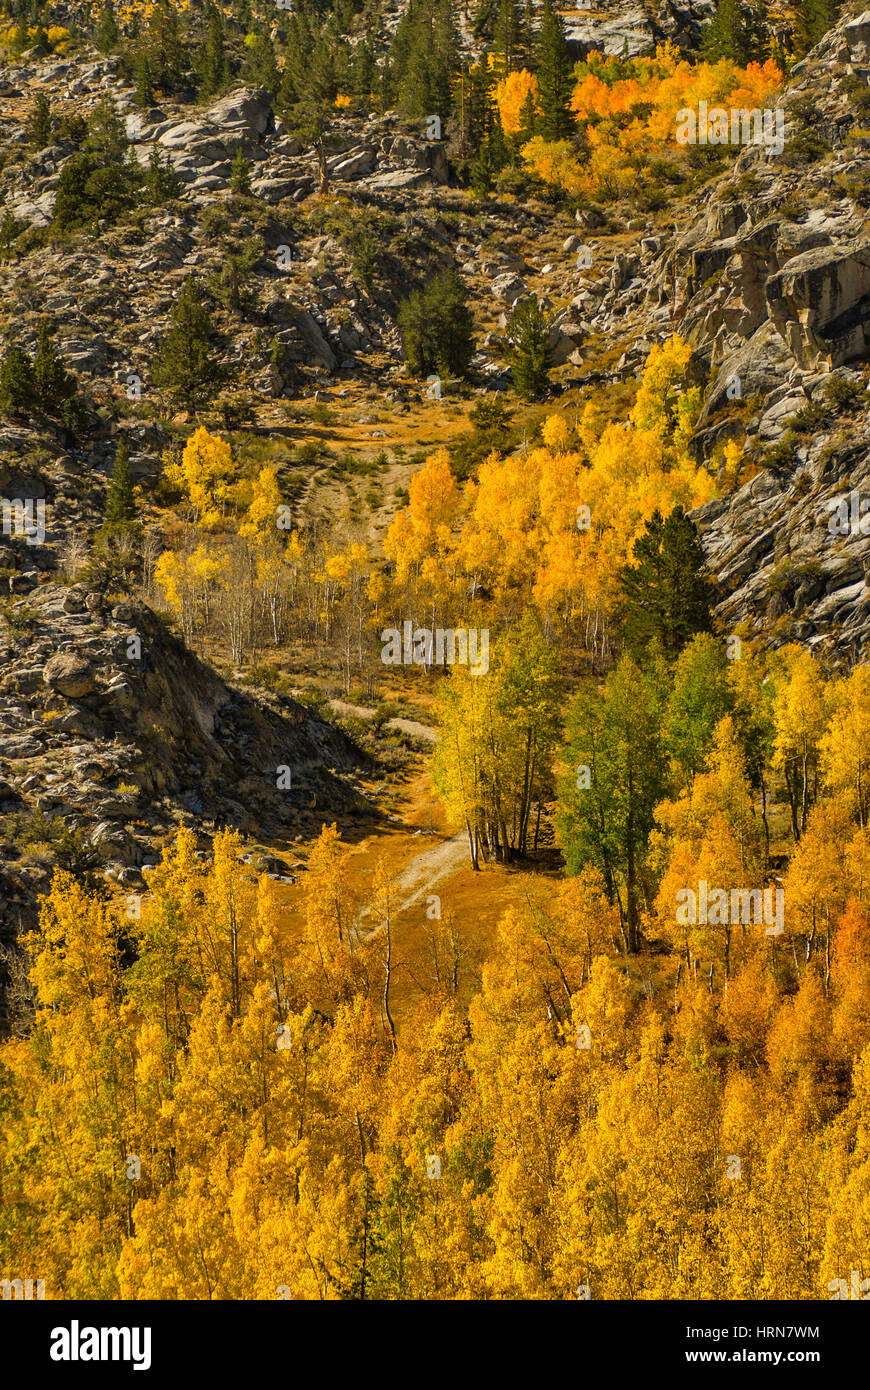 Les arbres Aspen dans le feuillage d'automne dans la région Evolution, John Muir Wilderness, Sierra Nevada, Californie, États-Unis Banque D'Images